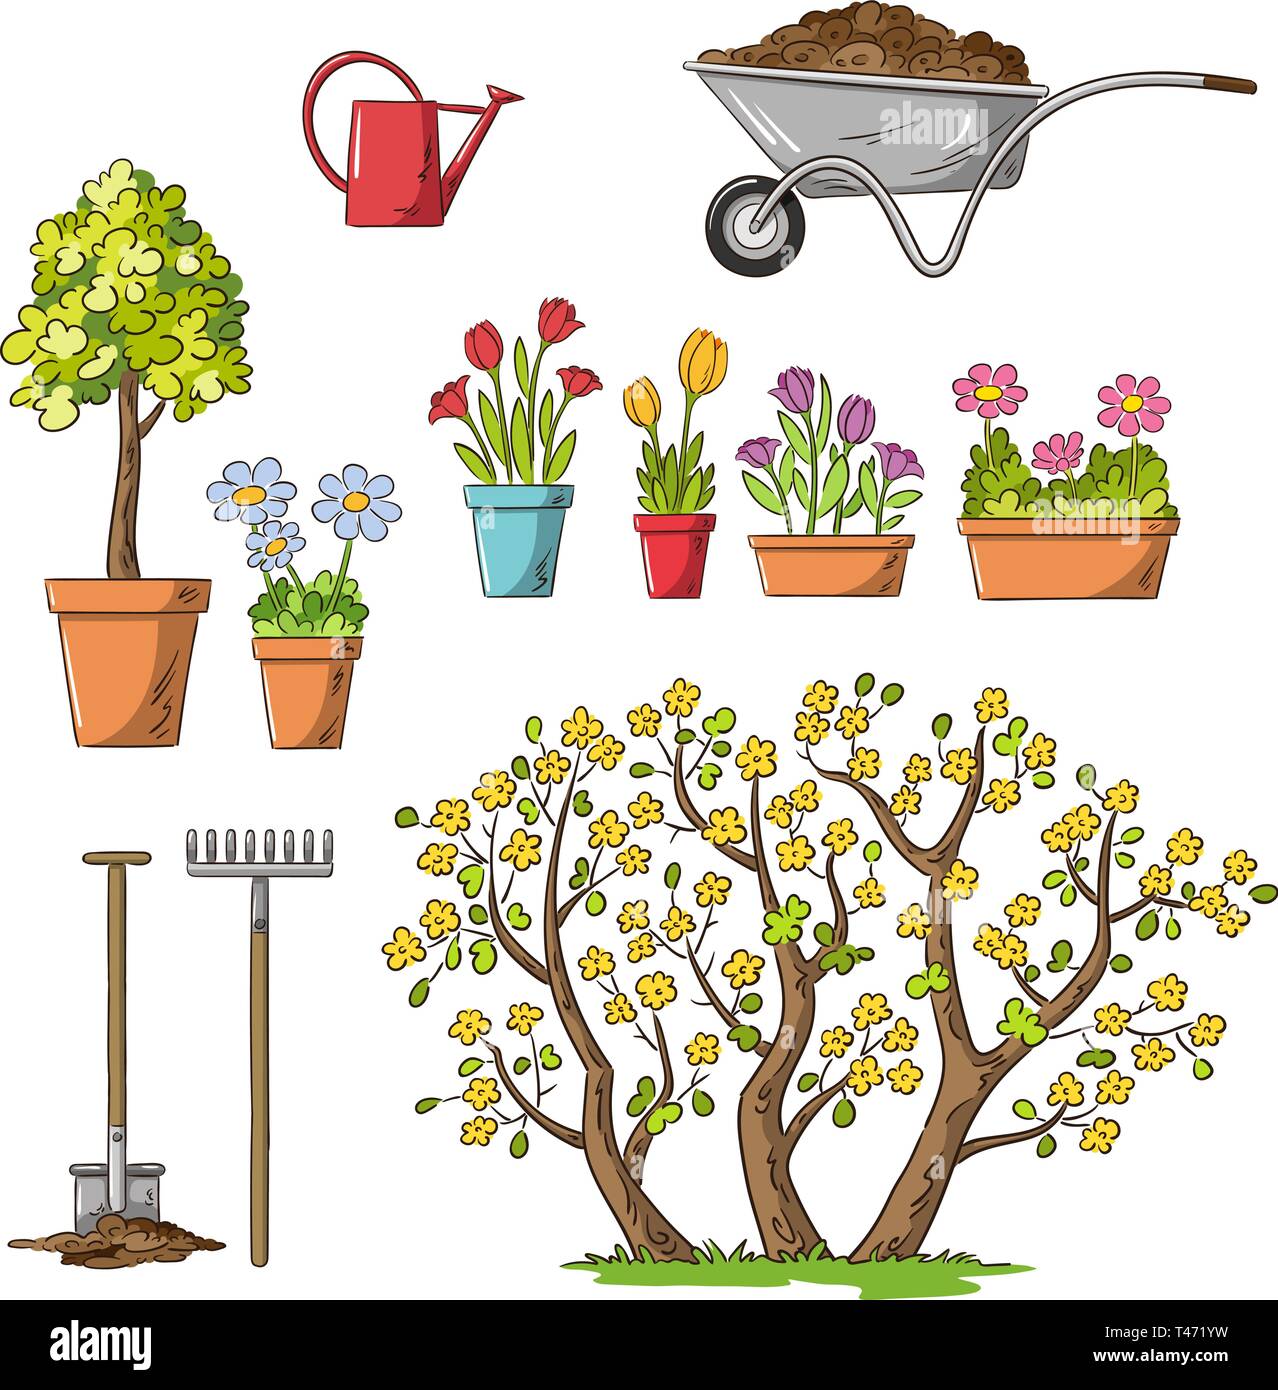 Colección de flores y herramientas de jardinería. Dibujar a mano ilustración vectorial. Ilustración del Vector